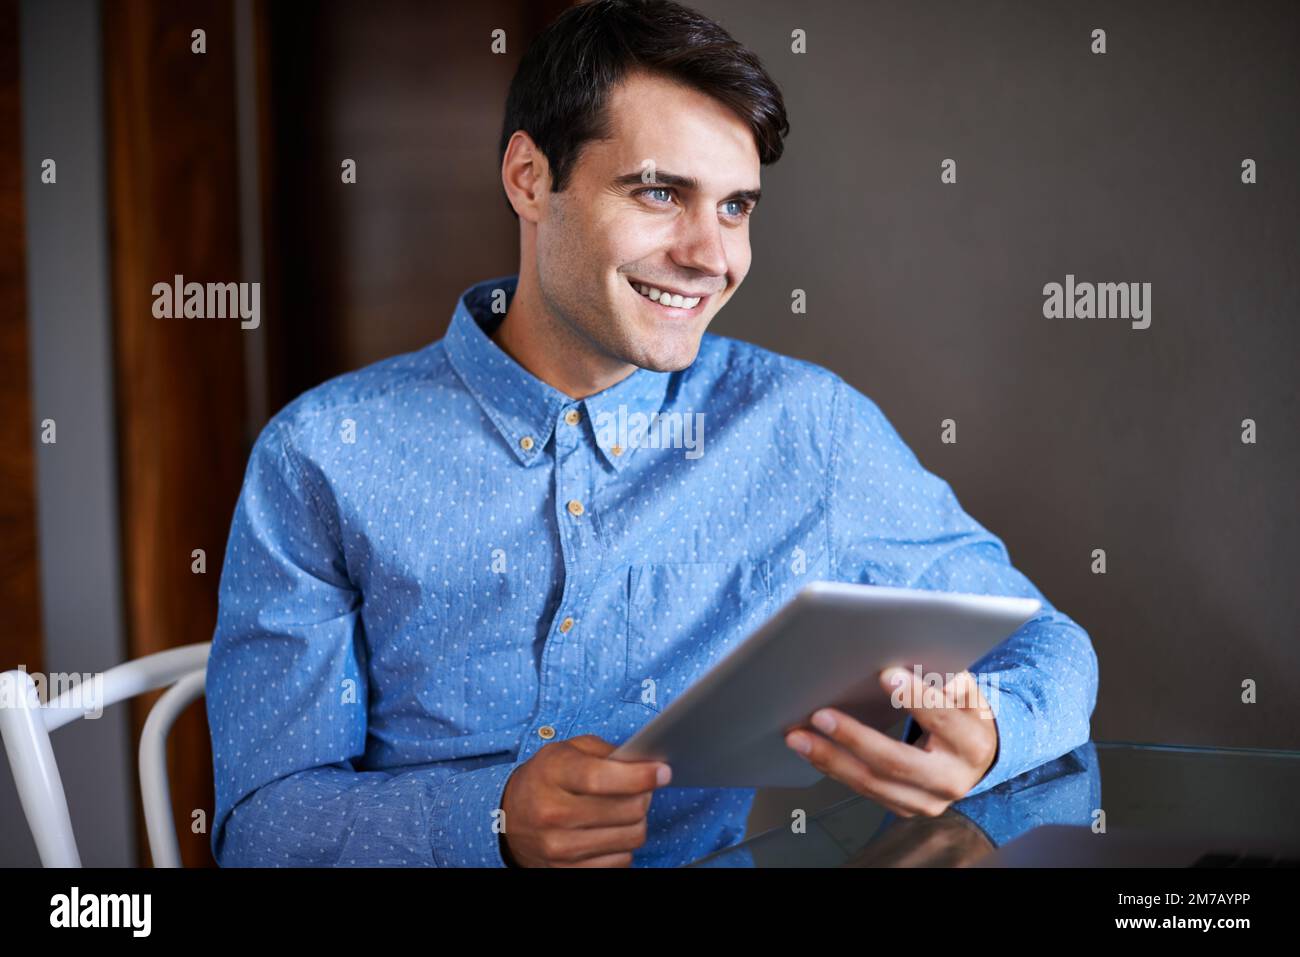 Pensare ai piani per estendere la sua base di clienti. un giovane uomo d'affari sorridente seduto con il suo tablet digitale. Foto Stock